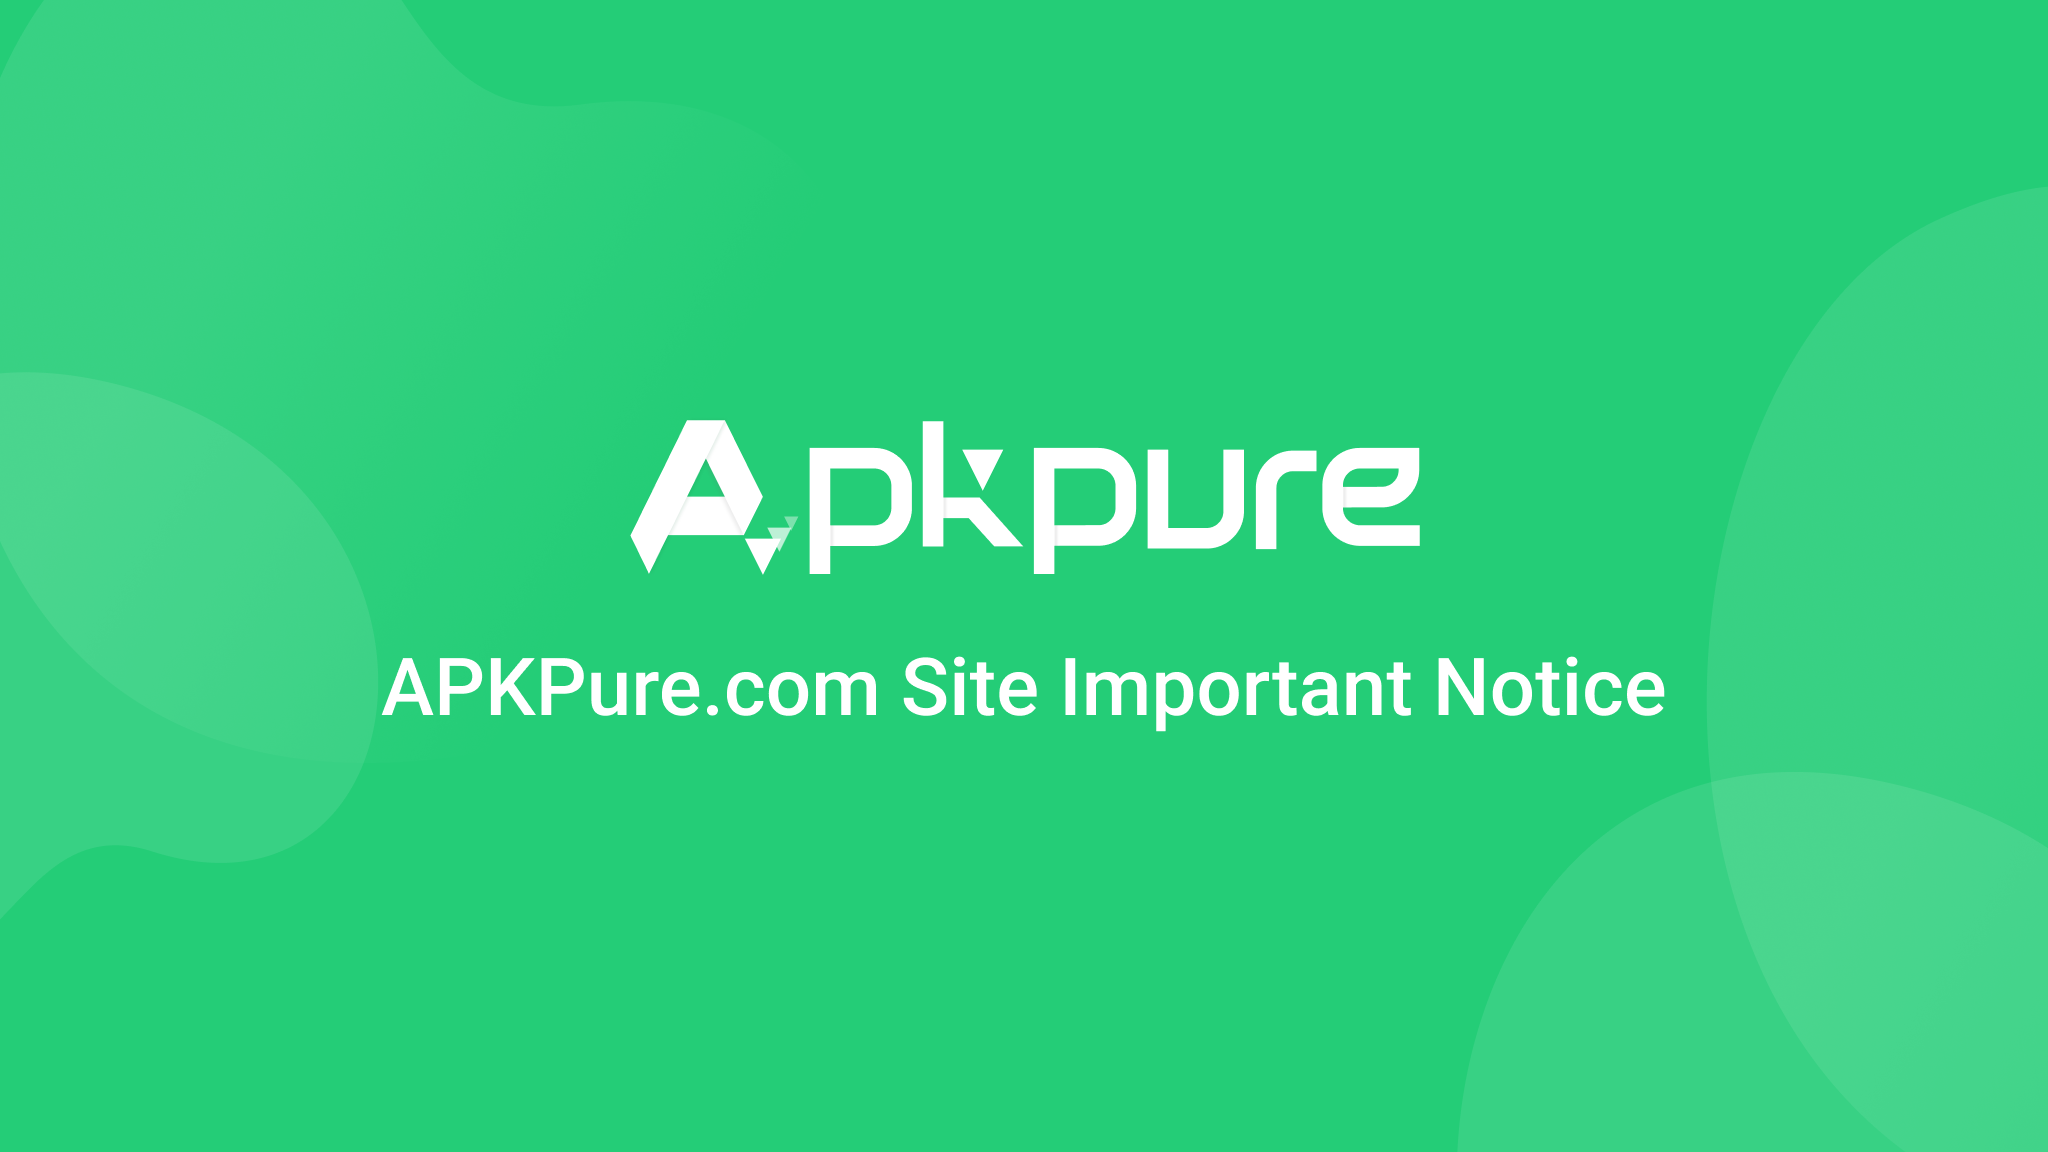 Important Notice Regarding APKPure.com Site image